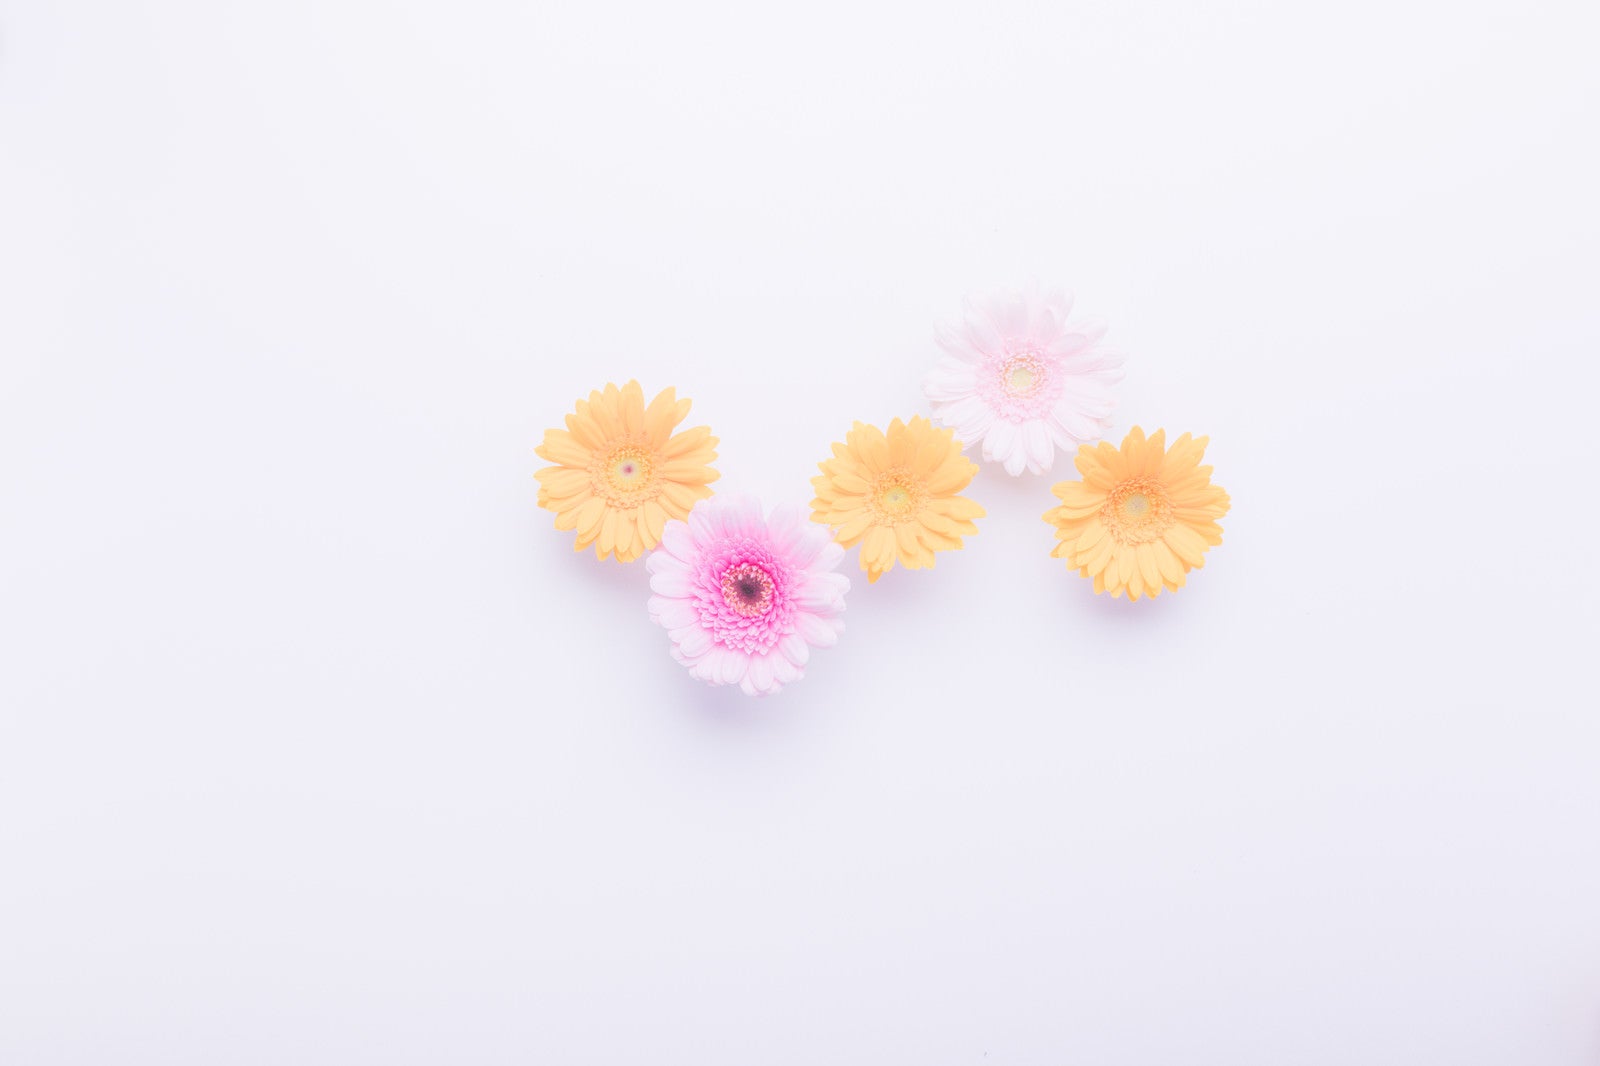 「白紙とお花」の写真